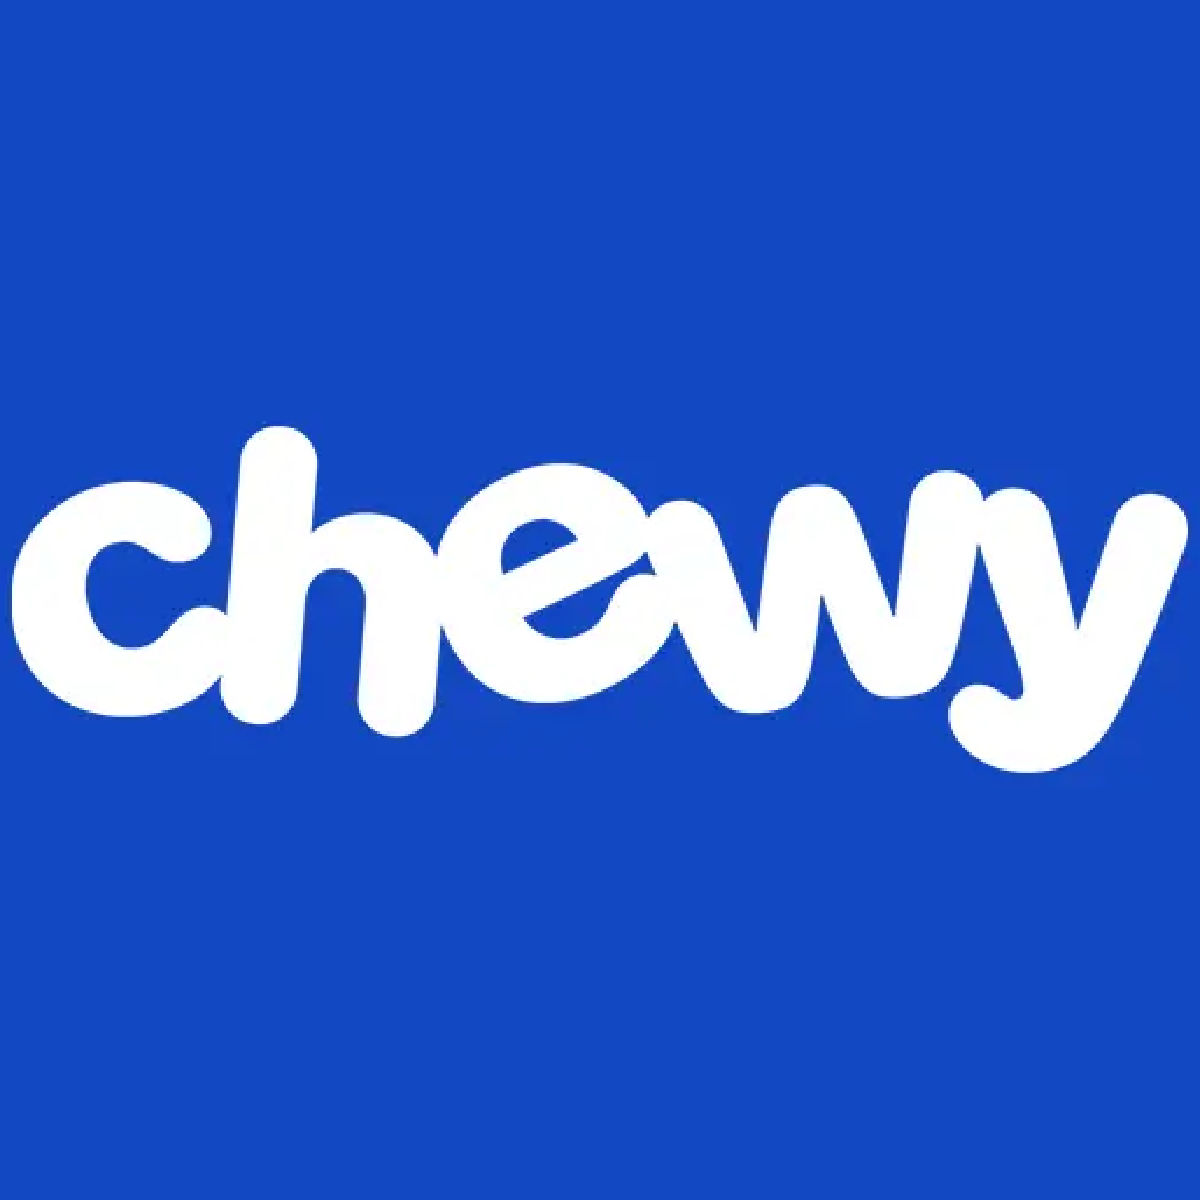 Chewy Logo Blue